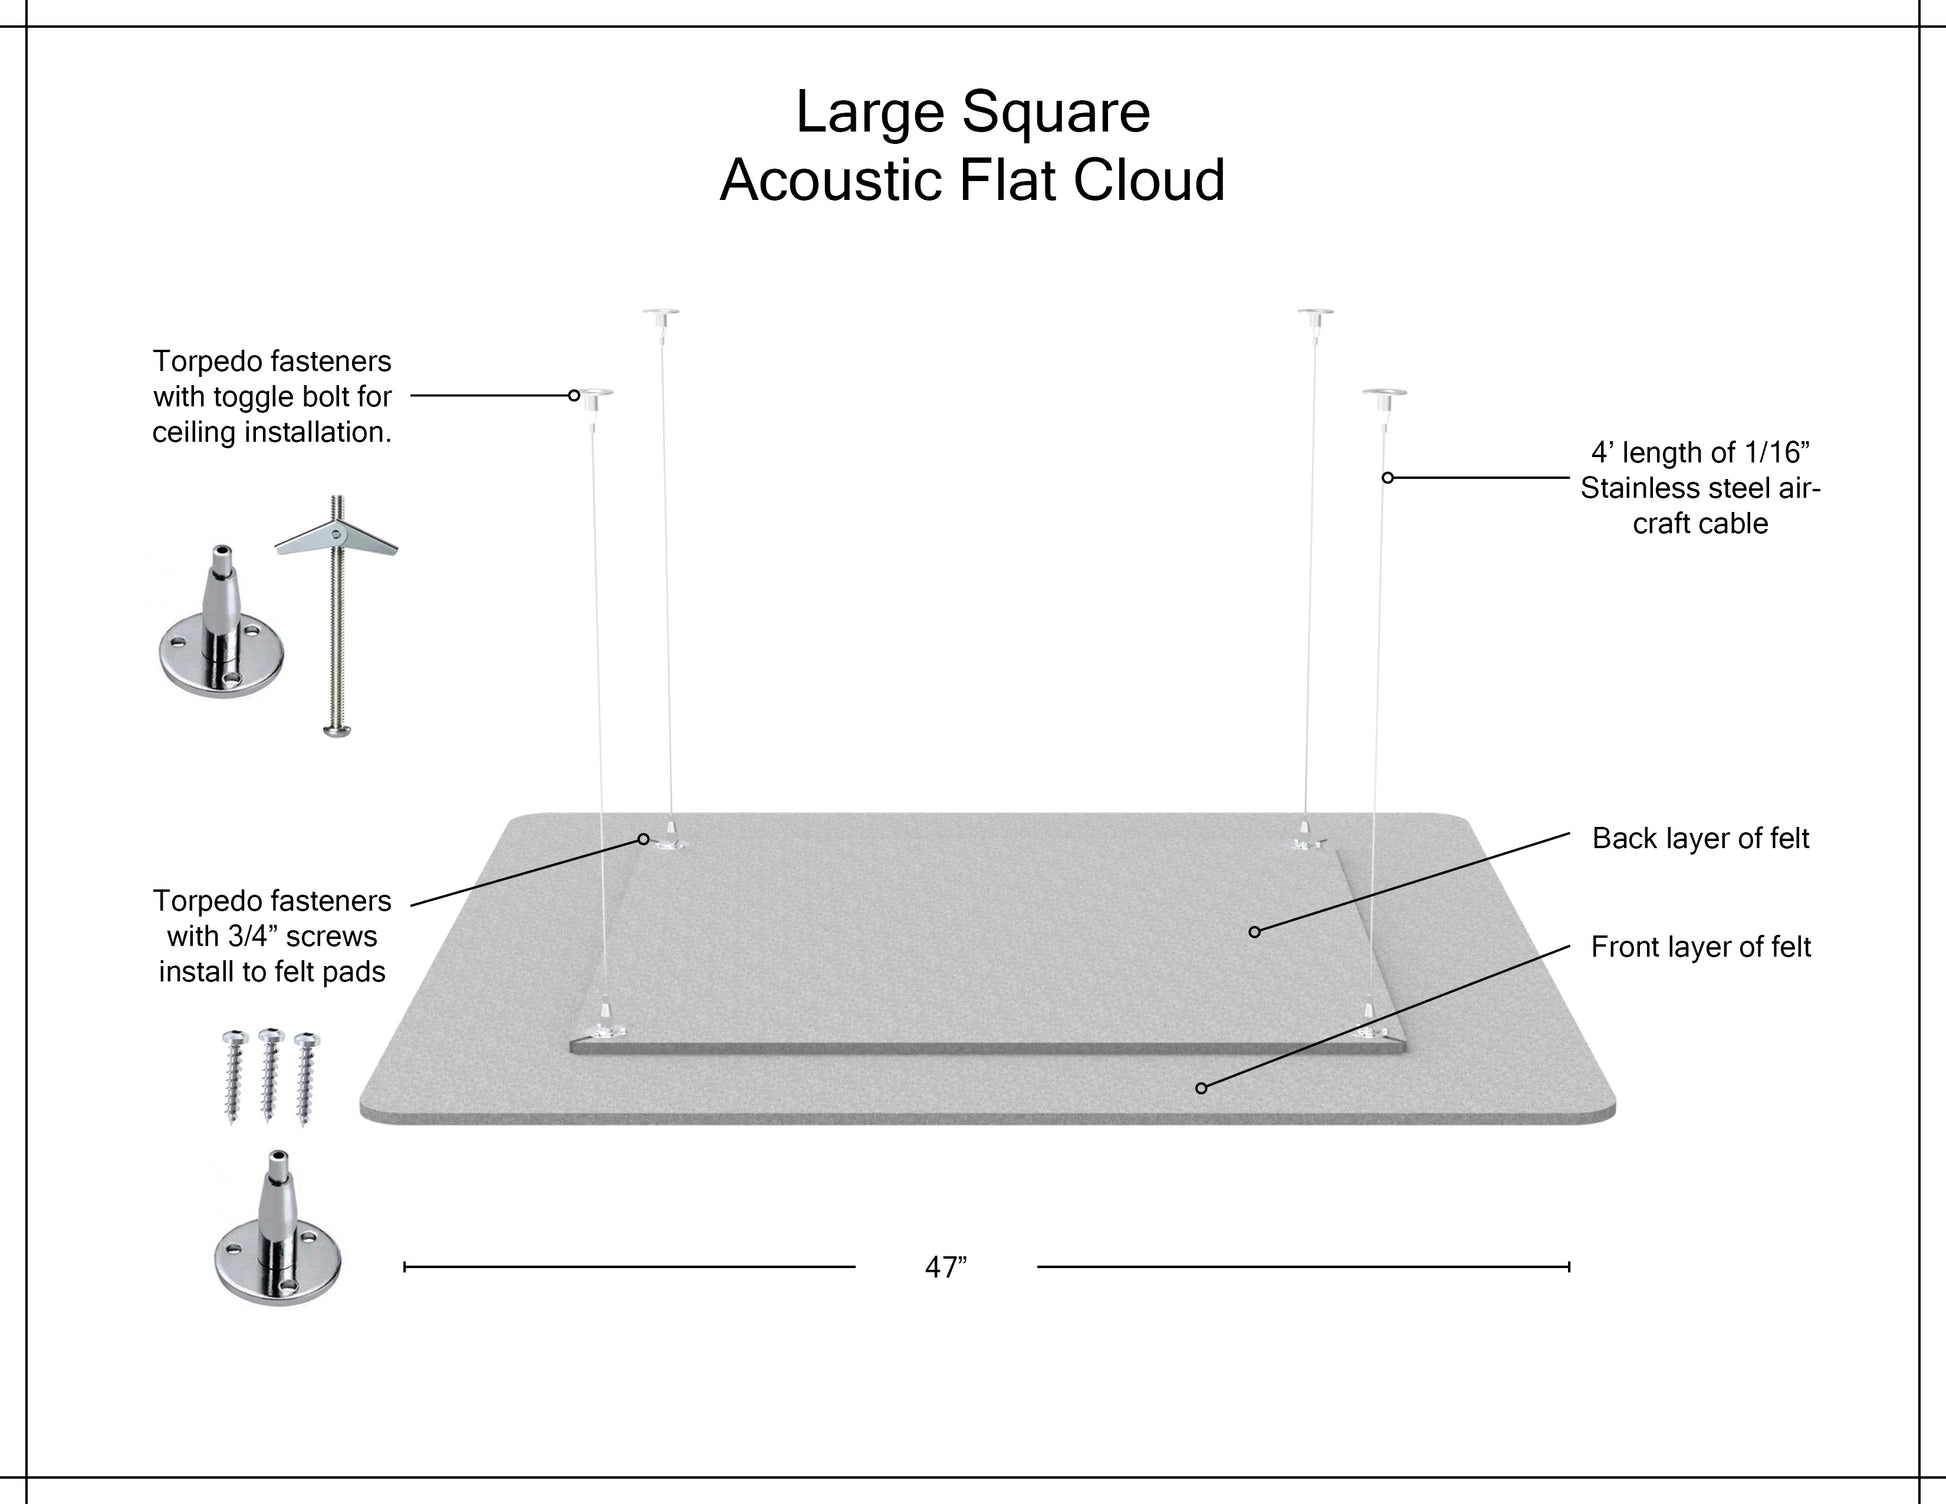 Large Square Acoustic Flat Cloud